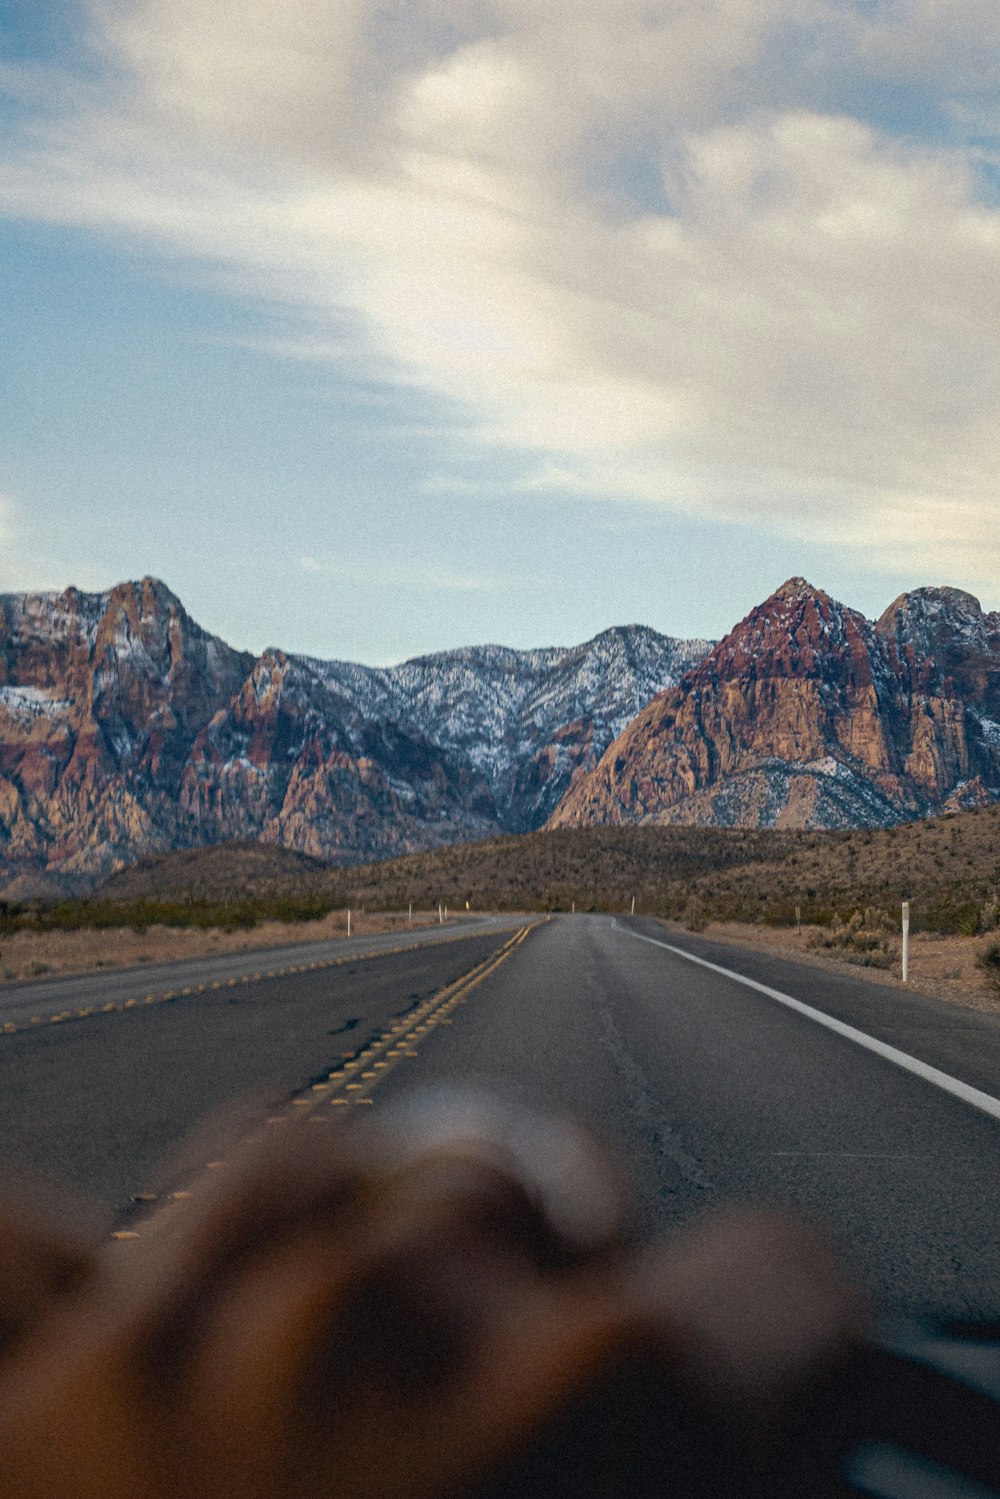 Una persona che guida un'auto su una strada con le montagne sullo sfondo